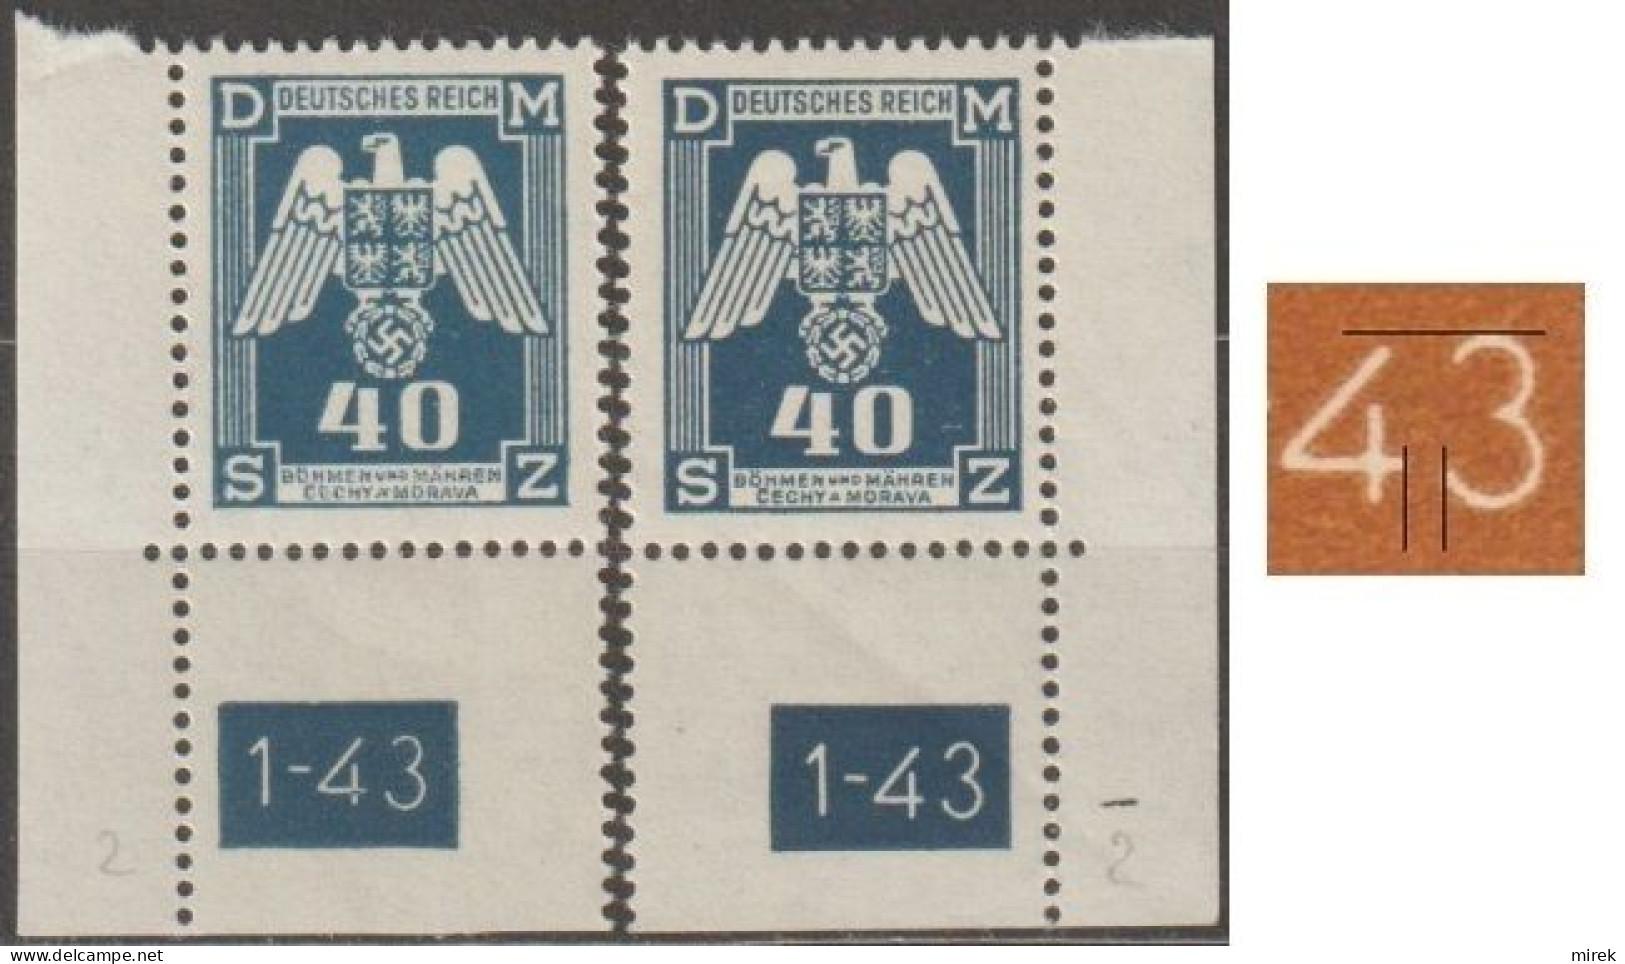 027/ Pof. SL 14, Corner Stamps, Plate Number 1-43, Type 2, Var. 2 - Ongebruikt